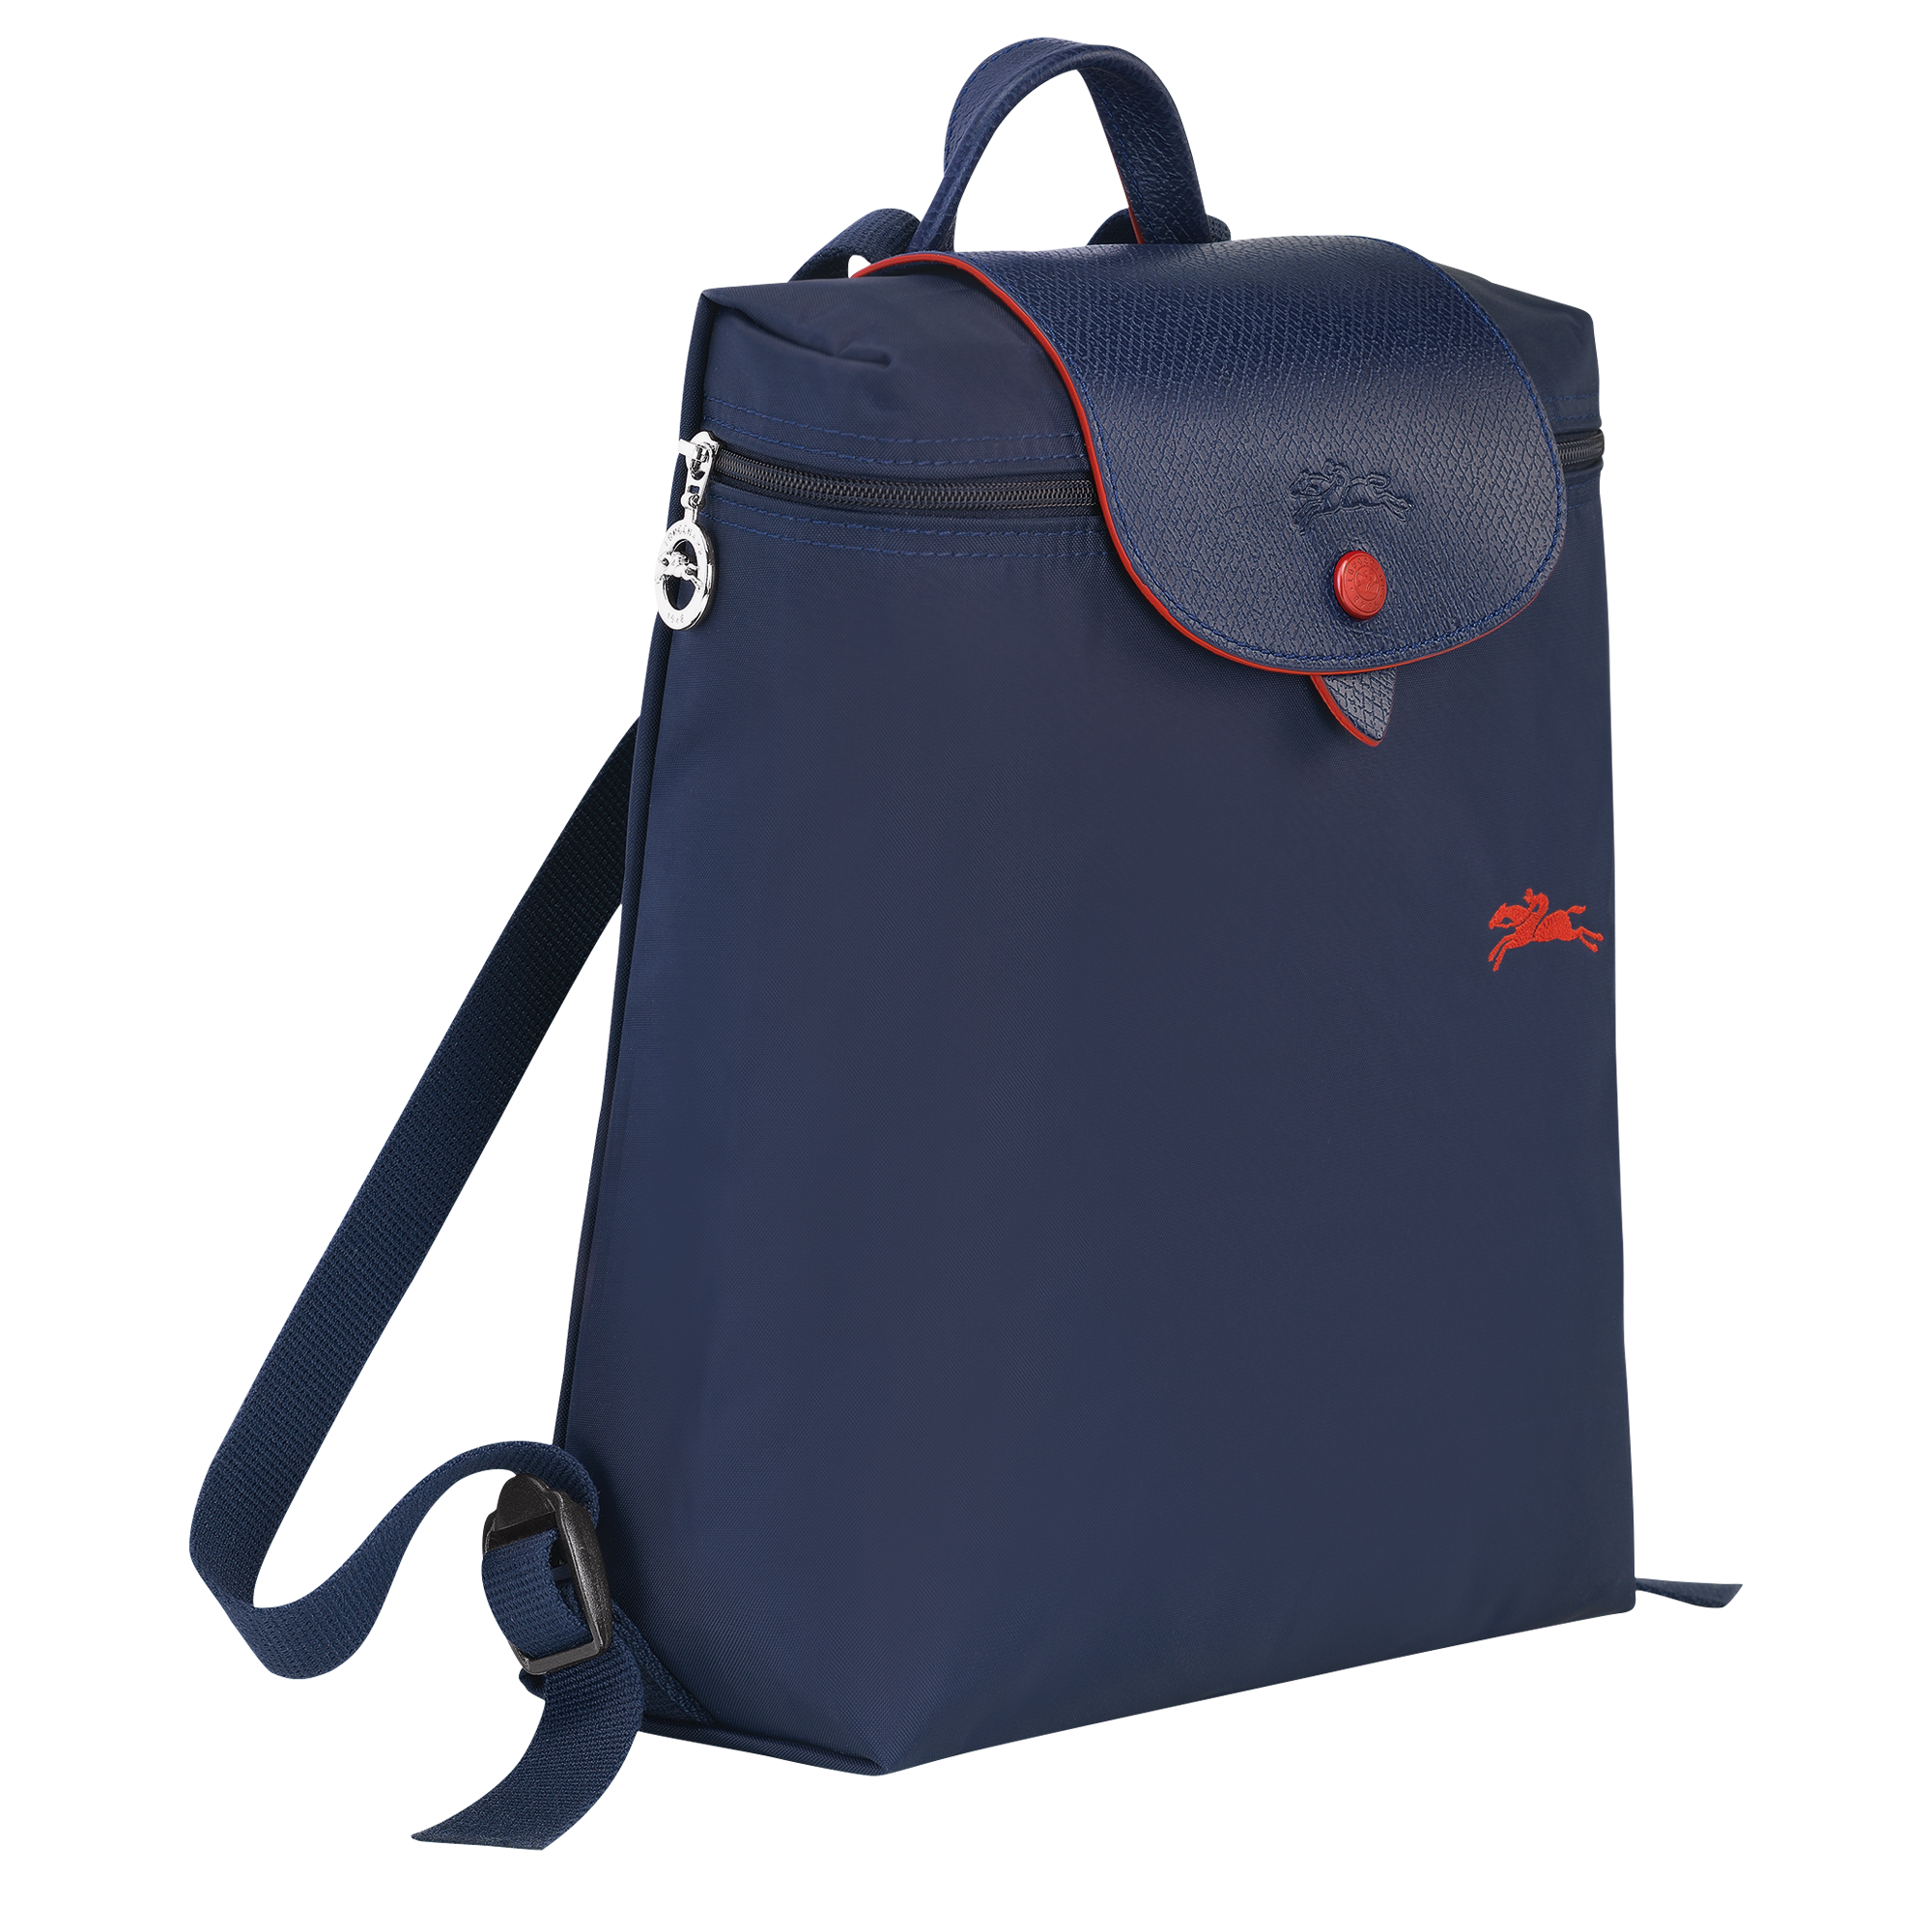 longchamp foldable backpack